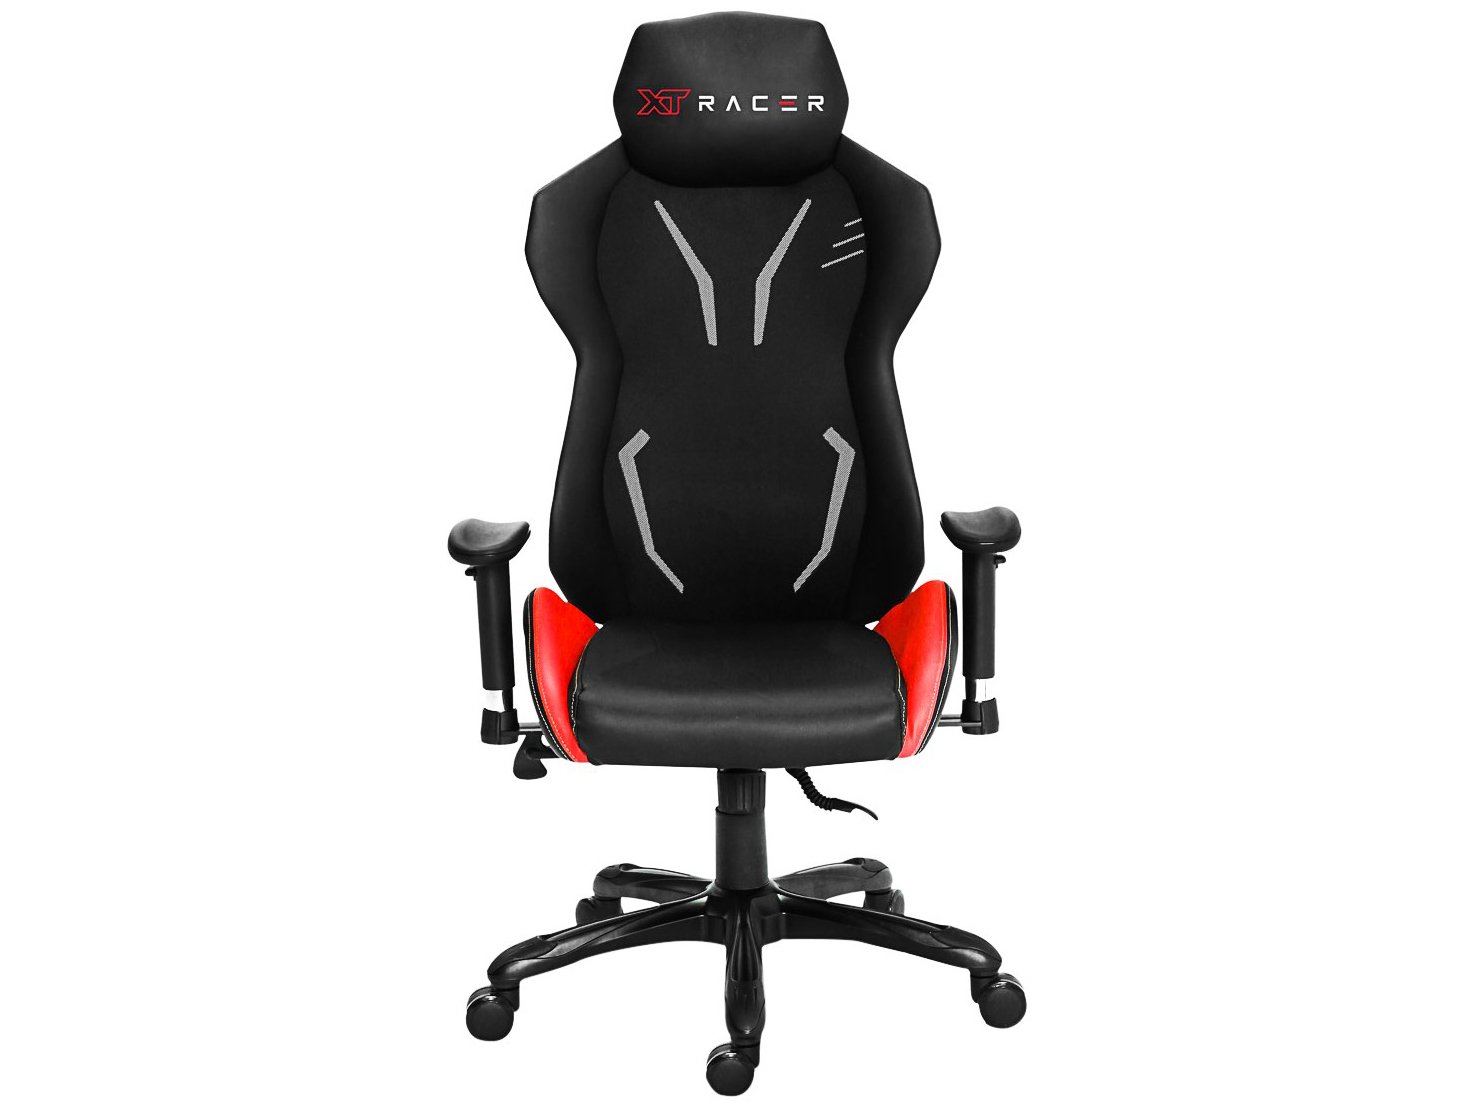 Cadeira Gamer XT Racer Reclinável - Preta e Vermelha Platinum Series XTP100 - 2